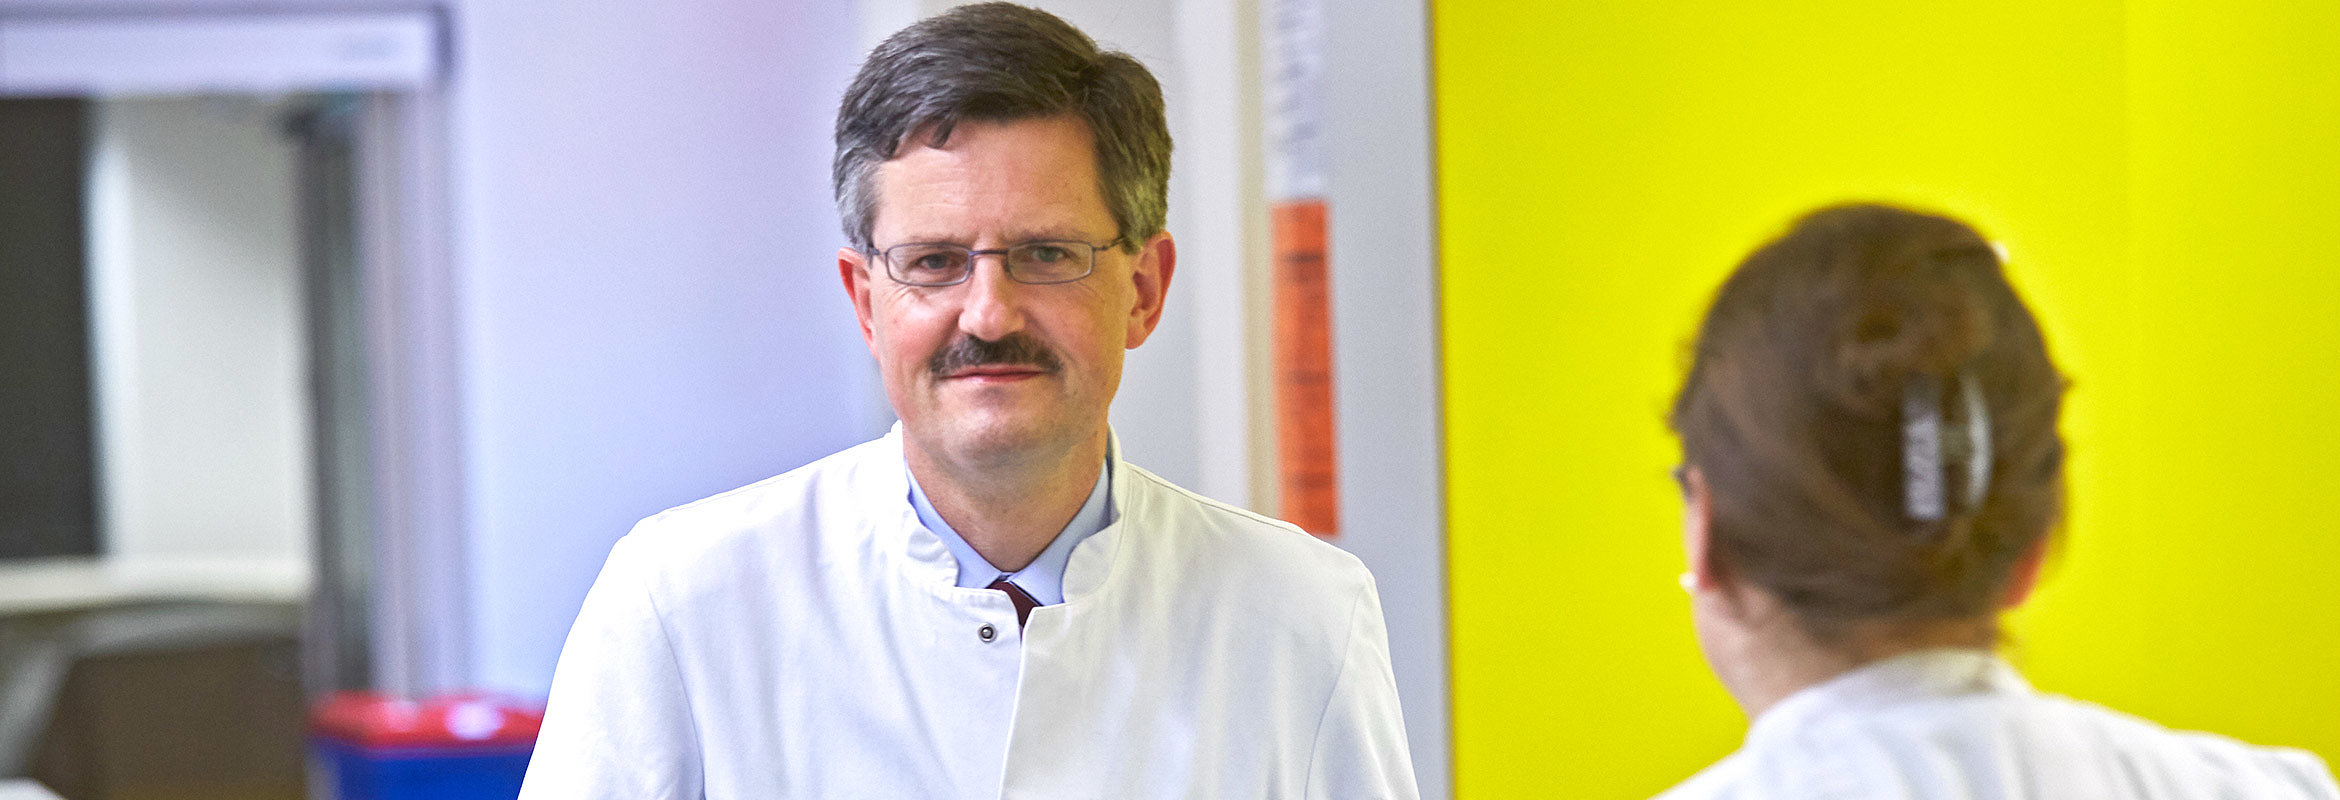 Prof. Dr. med. Jochen Rädle, Chefarzt der Klinik für Innere Medizin 3 in Kaiserslautern